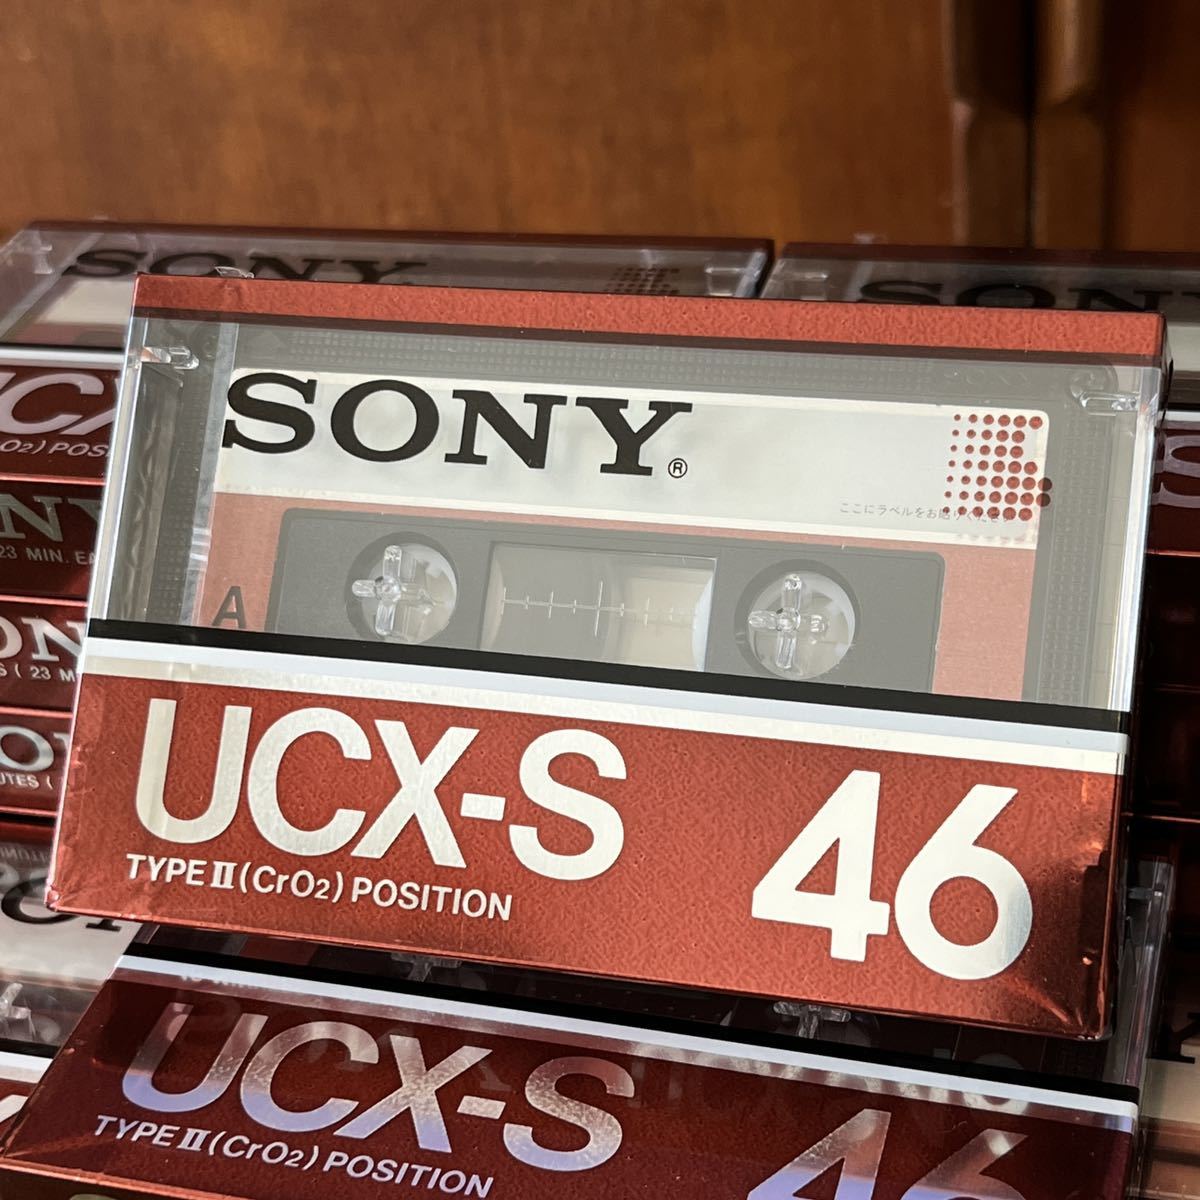 激安先着SONY カセットテープ ハイポジション UCX-S46 13本セット 